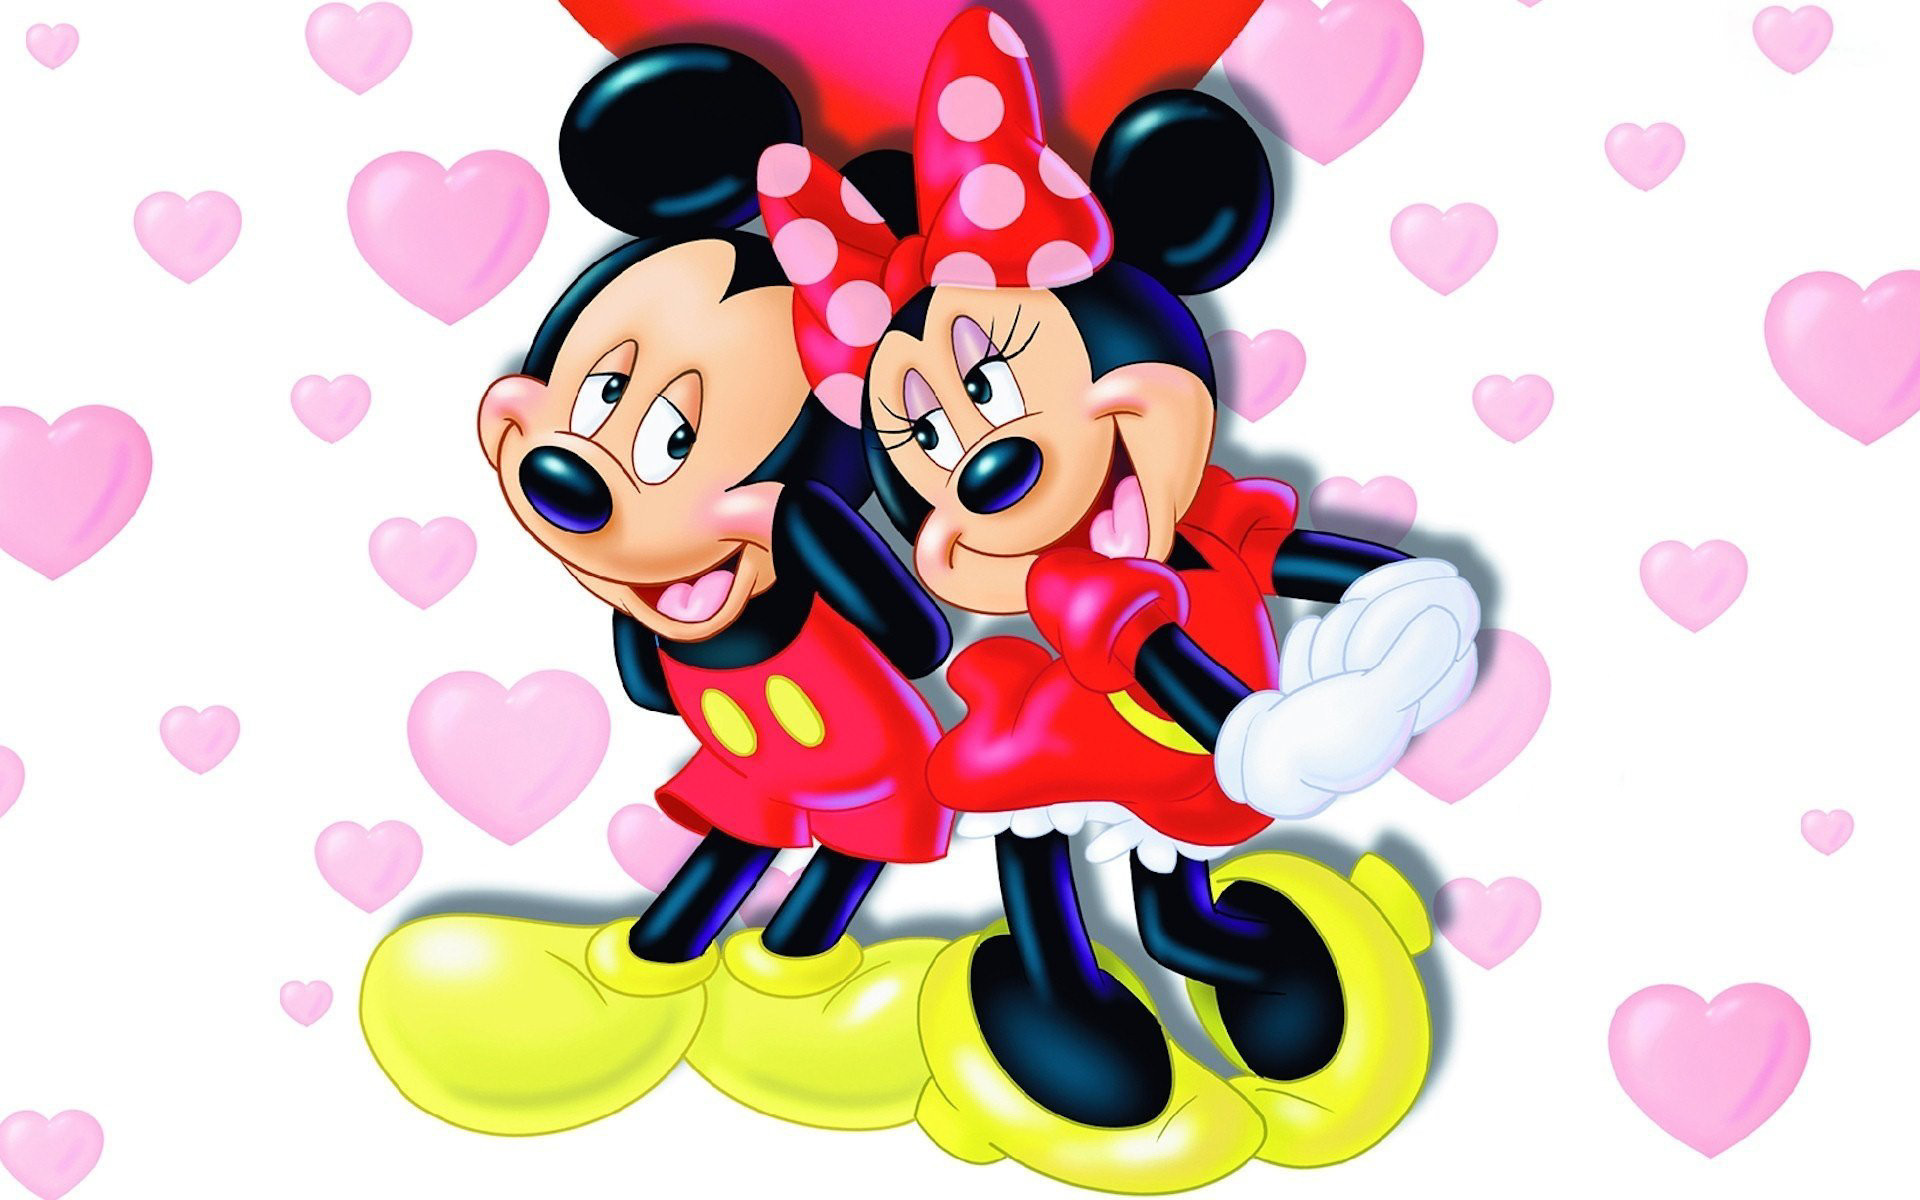 Mickey and Minnie Wallpaper - Disney Wallpaper (5561257) - Fanpop